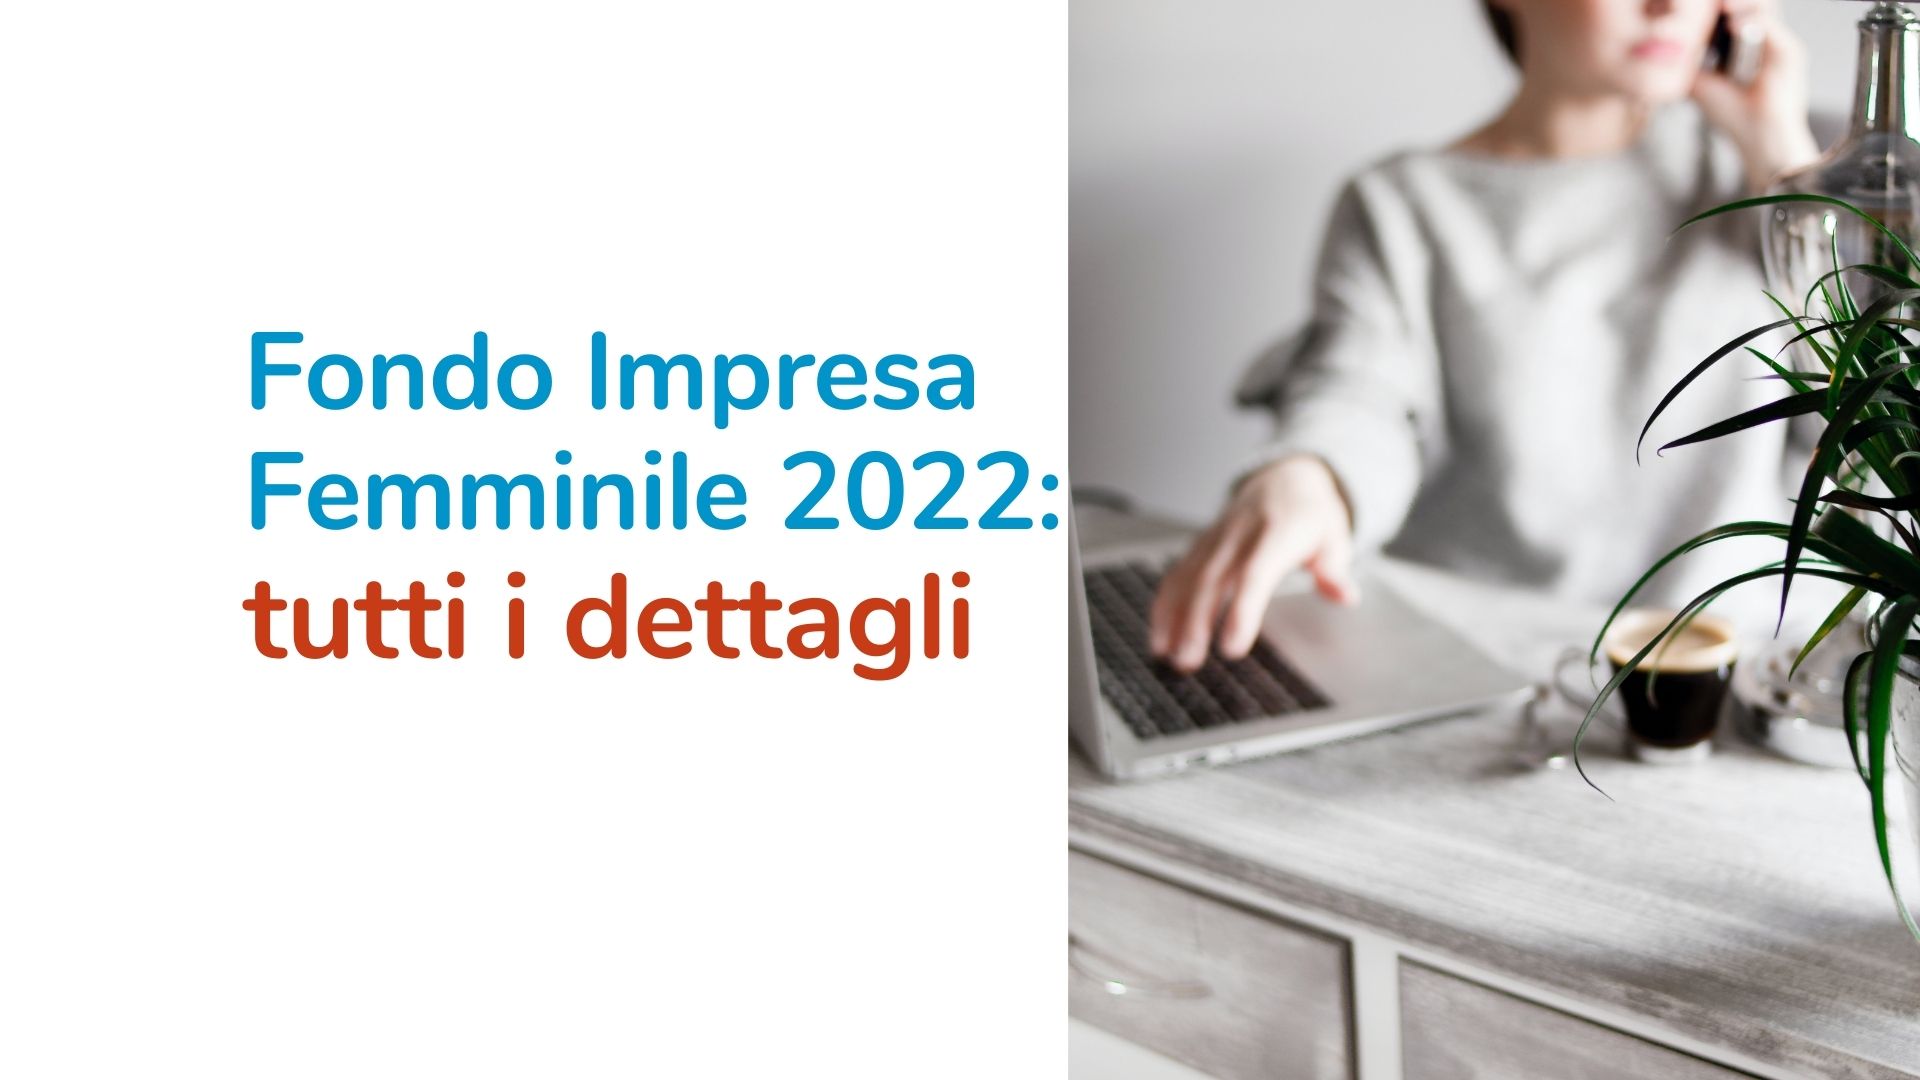 Fondo Impresa Femminile 2022: i dettagli